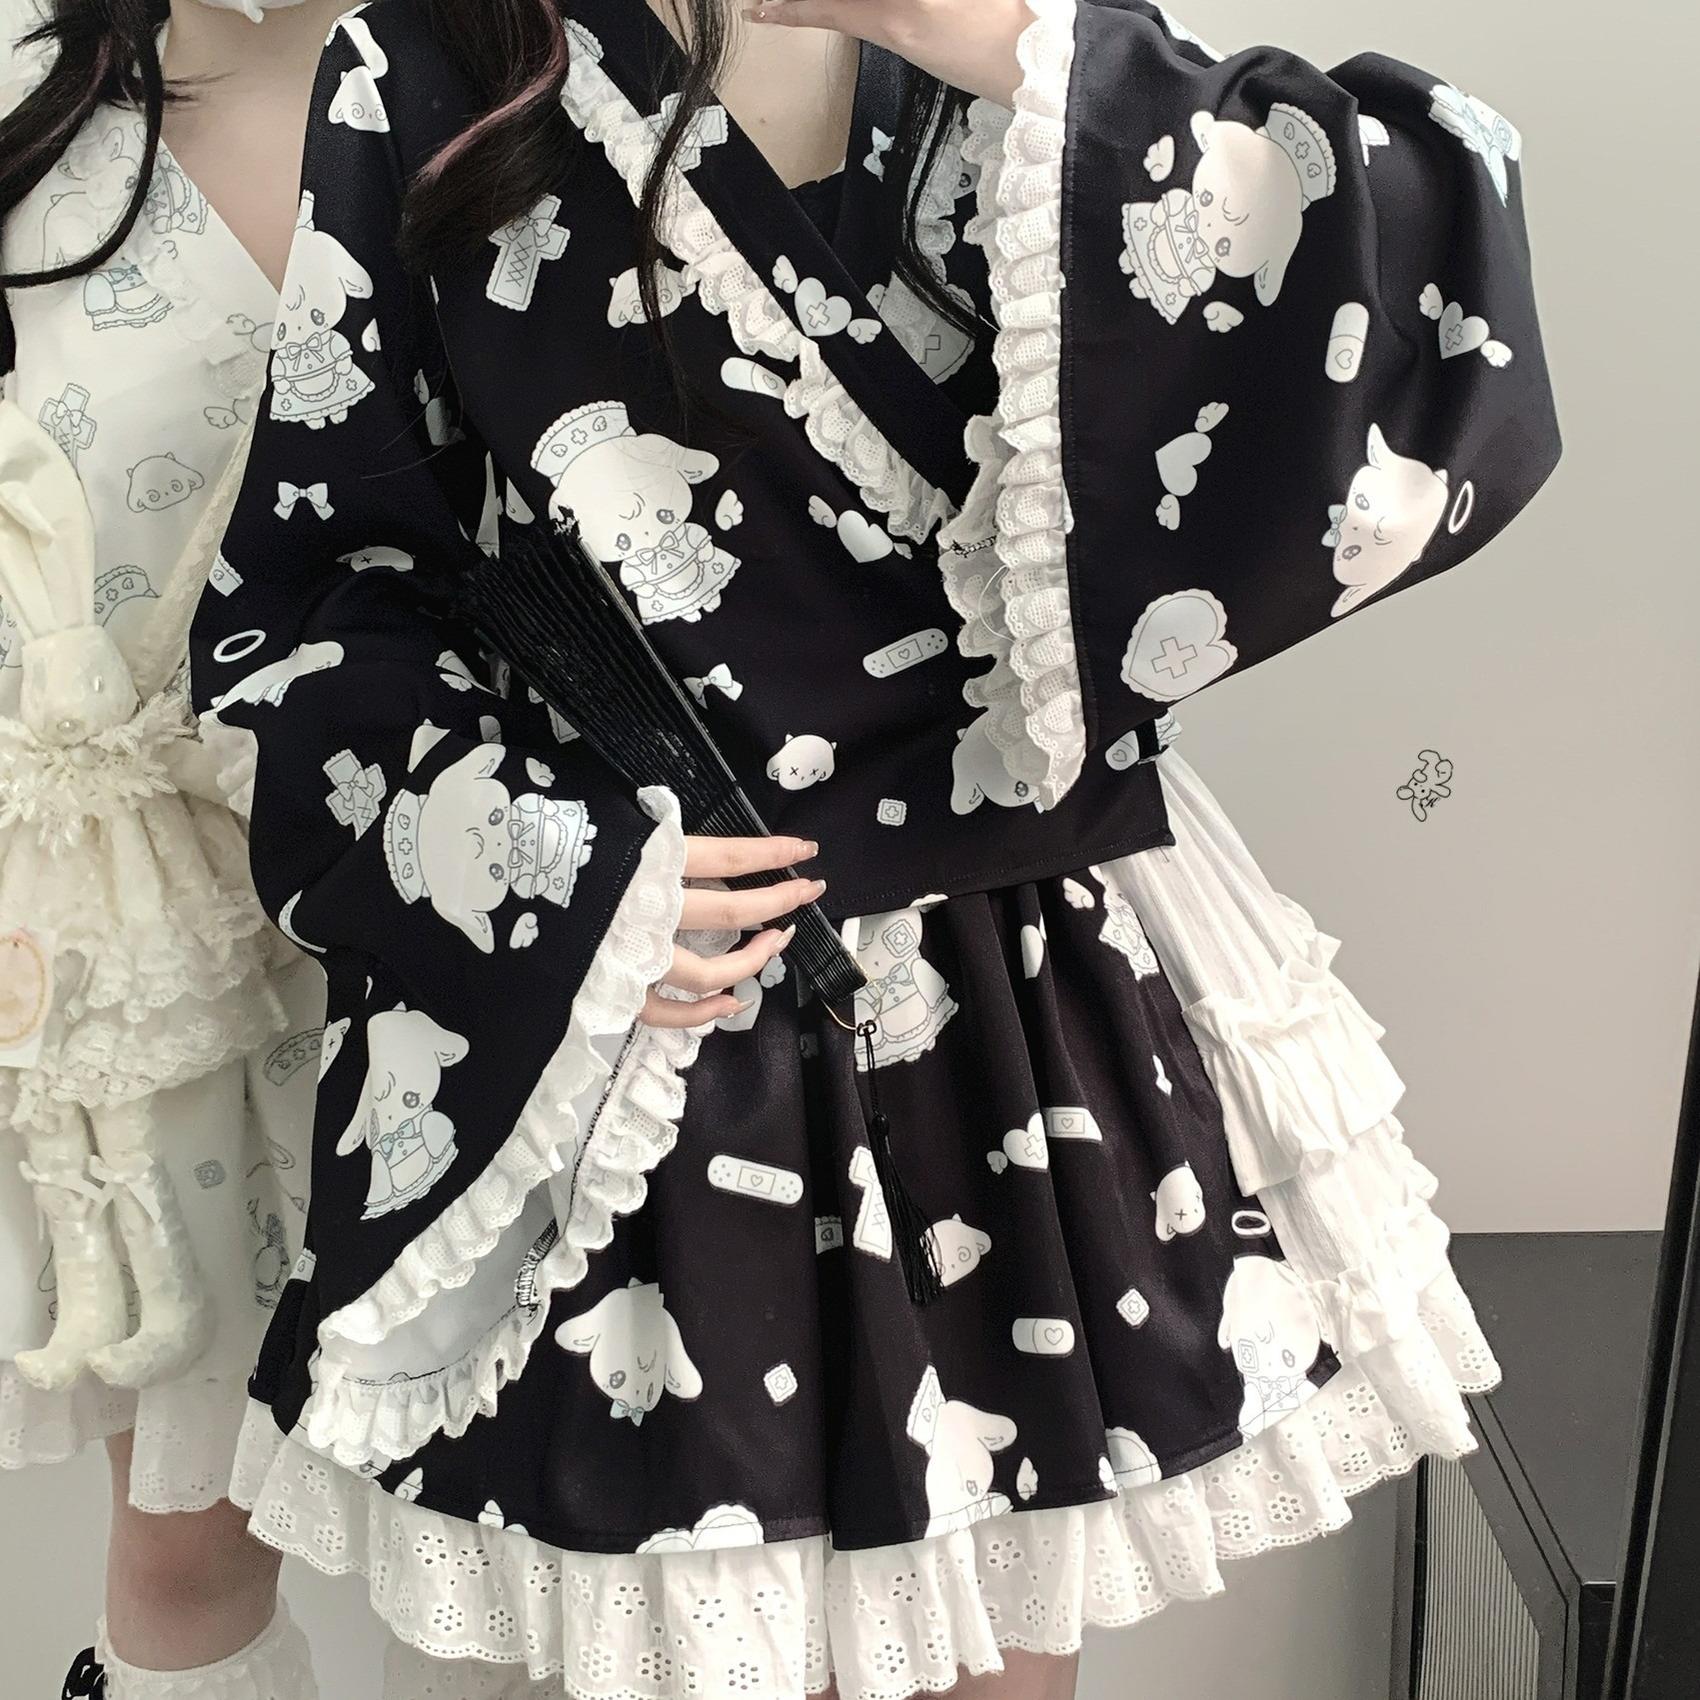 Tenshi Kaiwai Patchwork Skirt Kimono Top White Apron Three-Piece Set 36786:536960